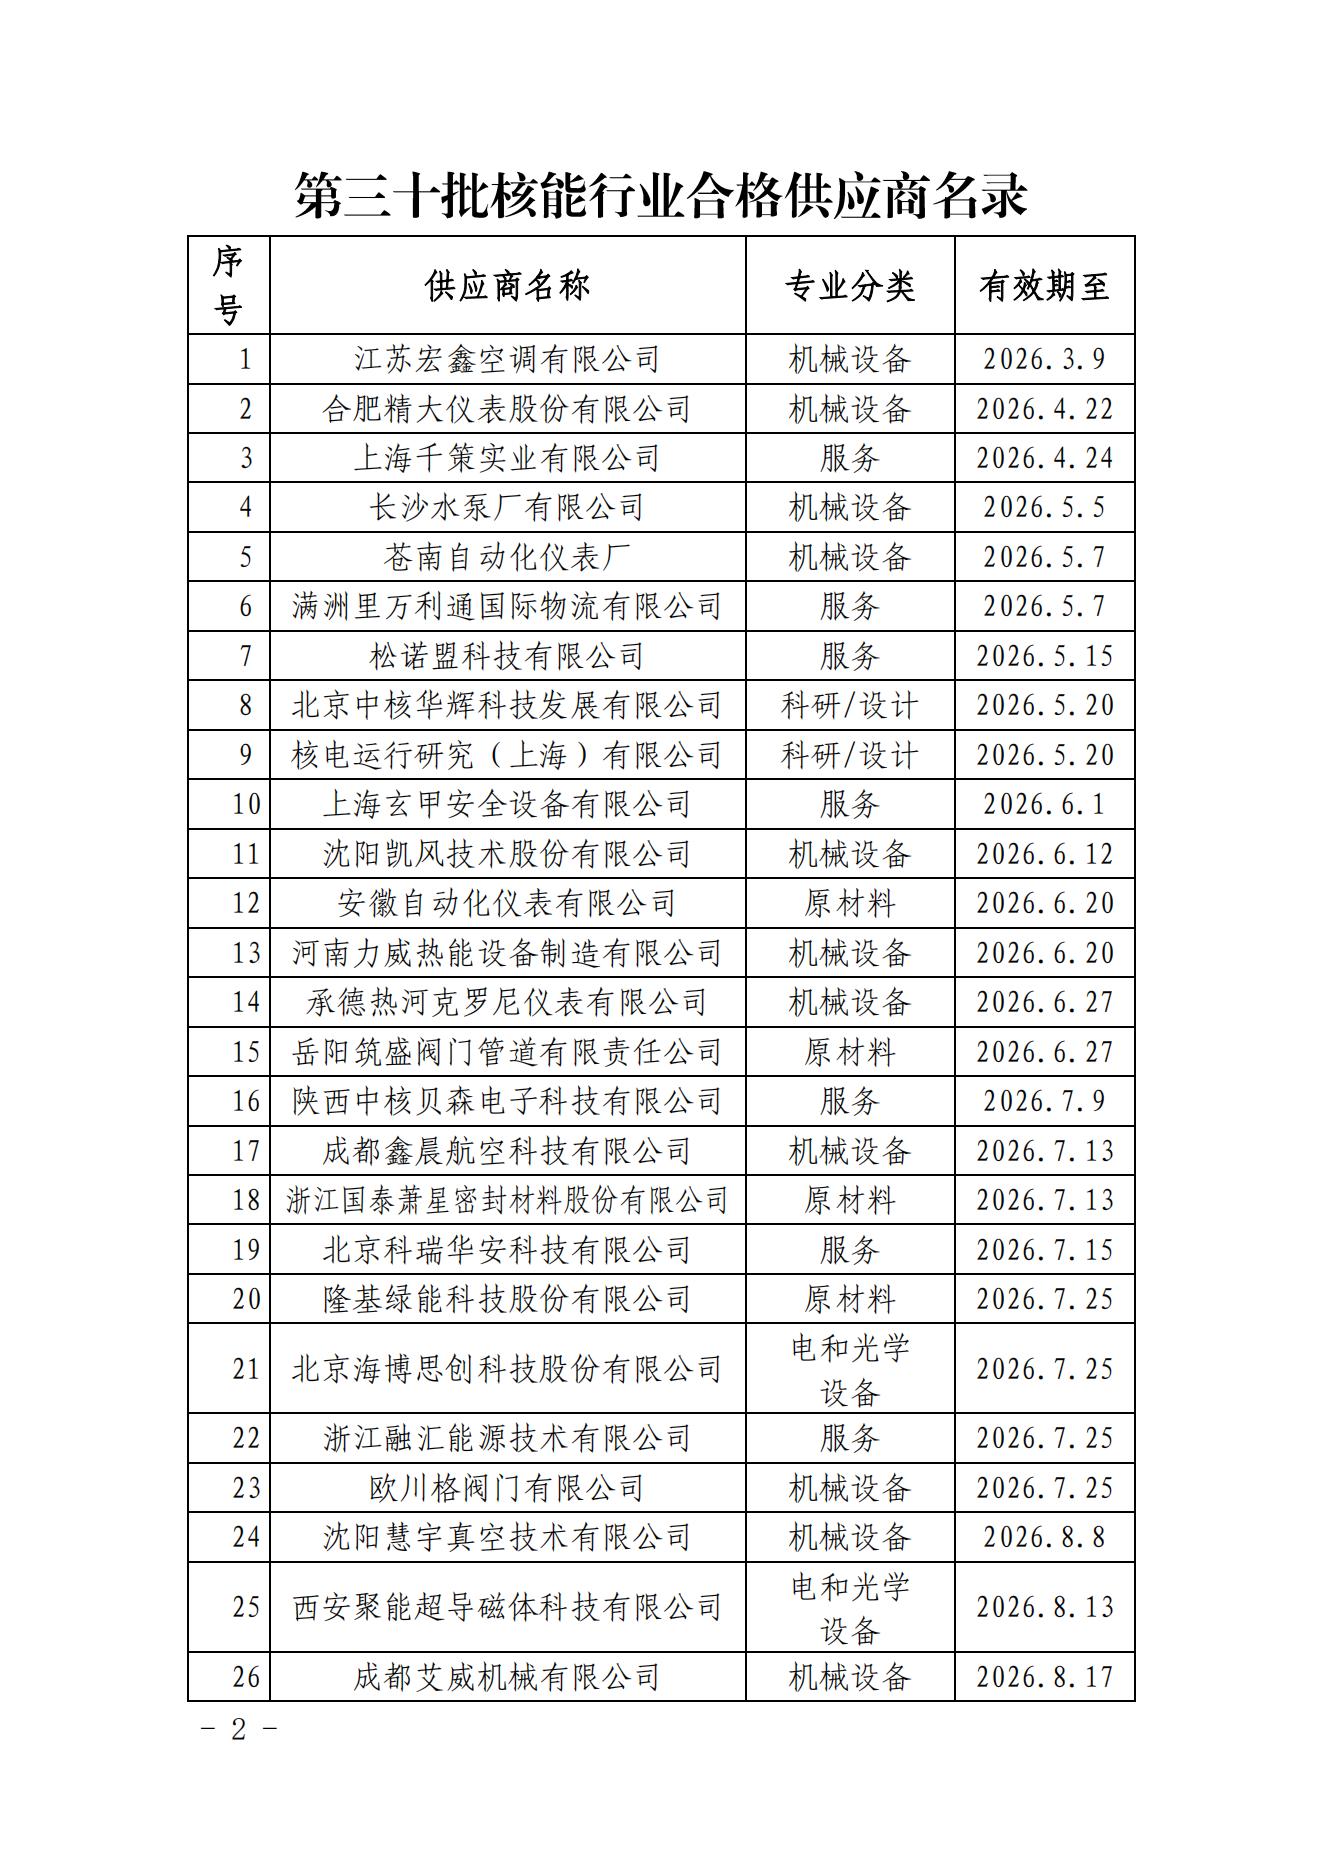 中国核能行业协会关于发布第三十批核能行业合格供应商名录的公告_01.jpg